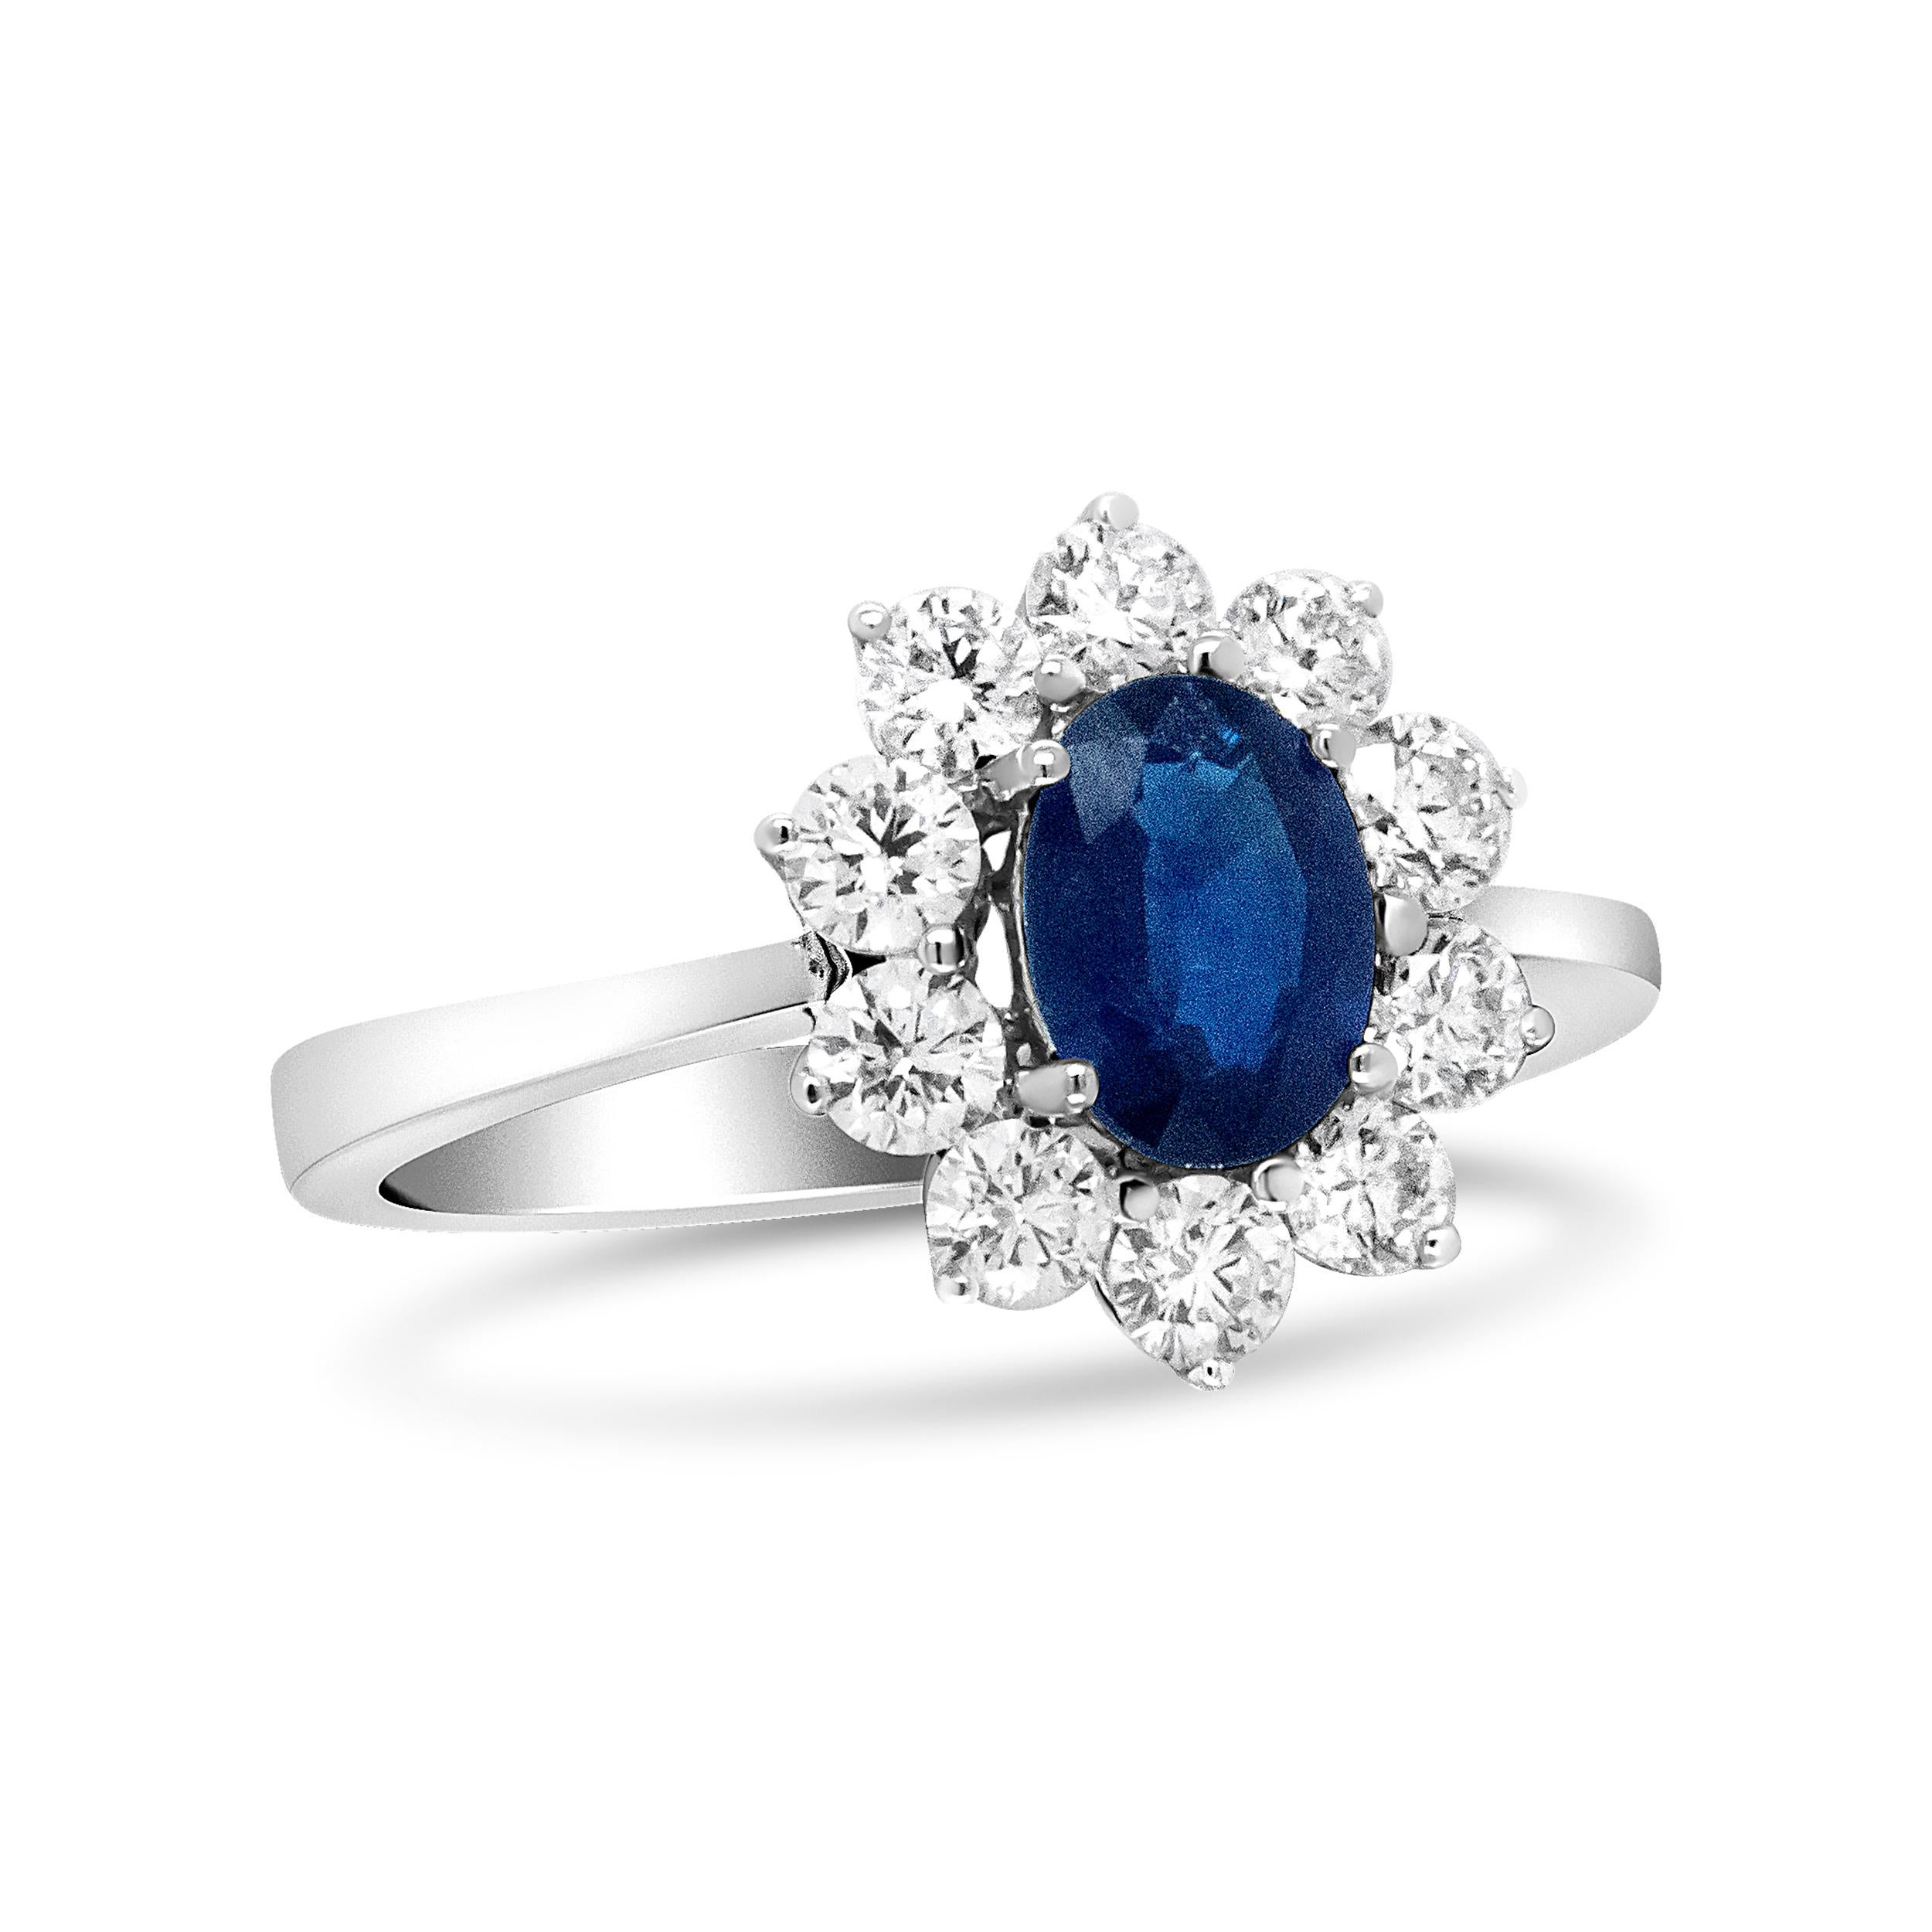 Dieser Ring aus 18 Karat Weißgold spiegelt den Ring von Diane wider und ist in der Mitte mit einem tiefblauen Saphir besetzt. Dieser 7x5 mm große Stein wird von einer floralen Gruppe weißer, runder Diamanten an den Seiten flankiert. Das